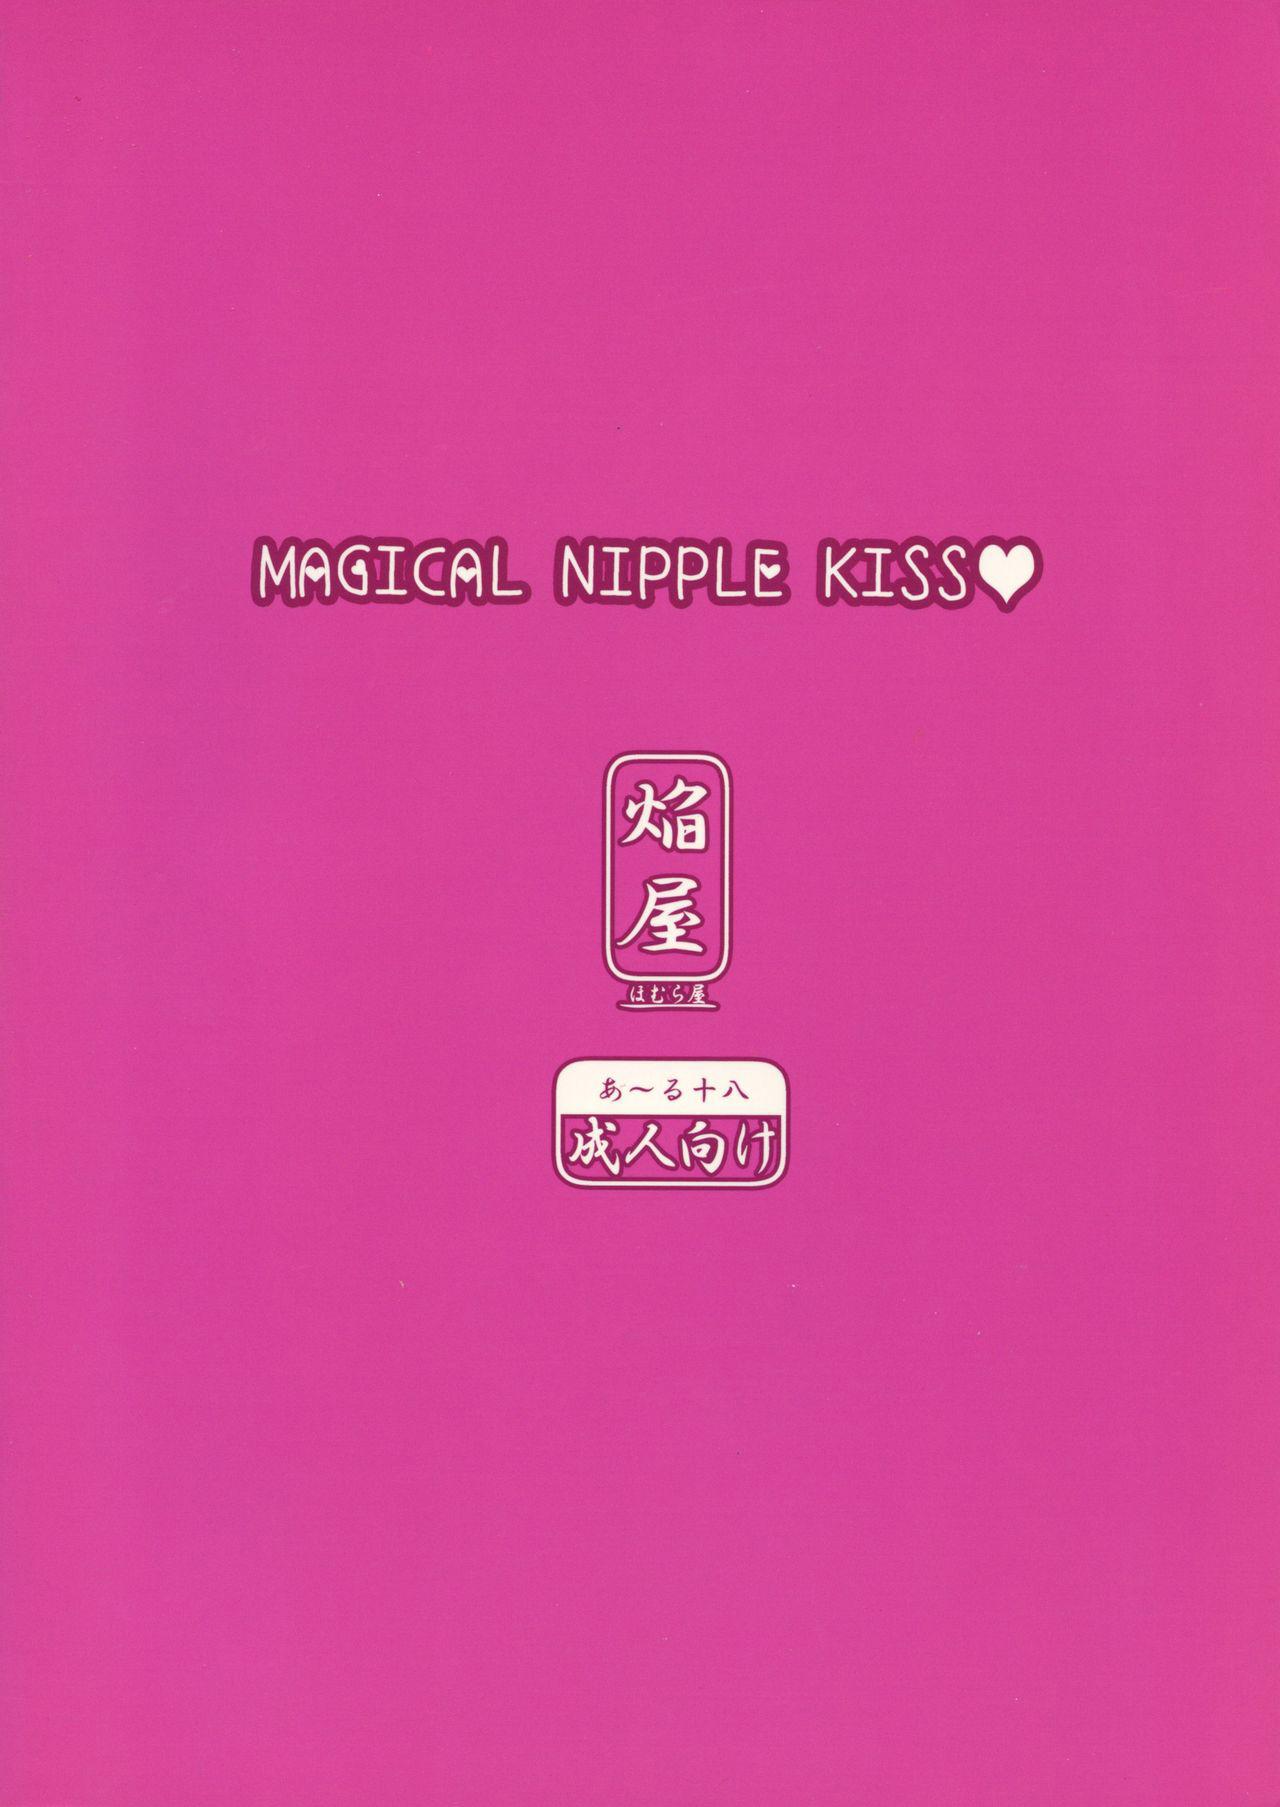 Hermana MAGICAL NIPPLE KISS - Original Gay Kissing - Picture 2